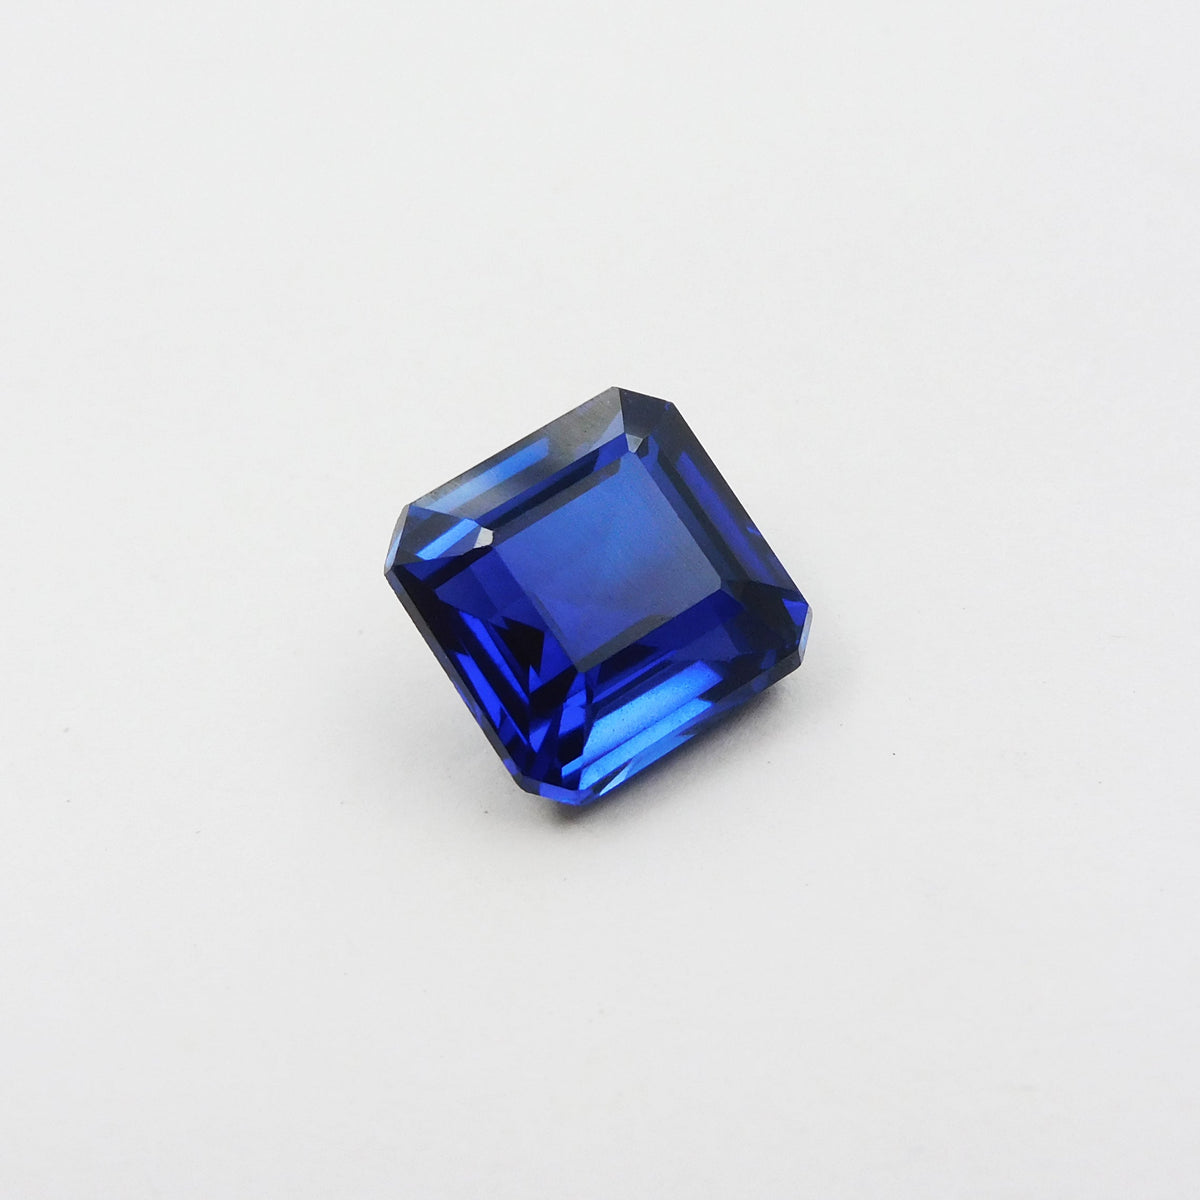 " Ring Size " Glorious Certified Natural Loose Gemstone 7.84 Carat Mini Dark Blue Tanzanite | Best Price On Tanzanite |